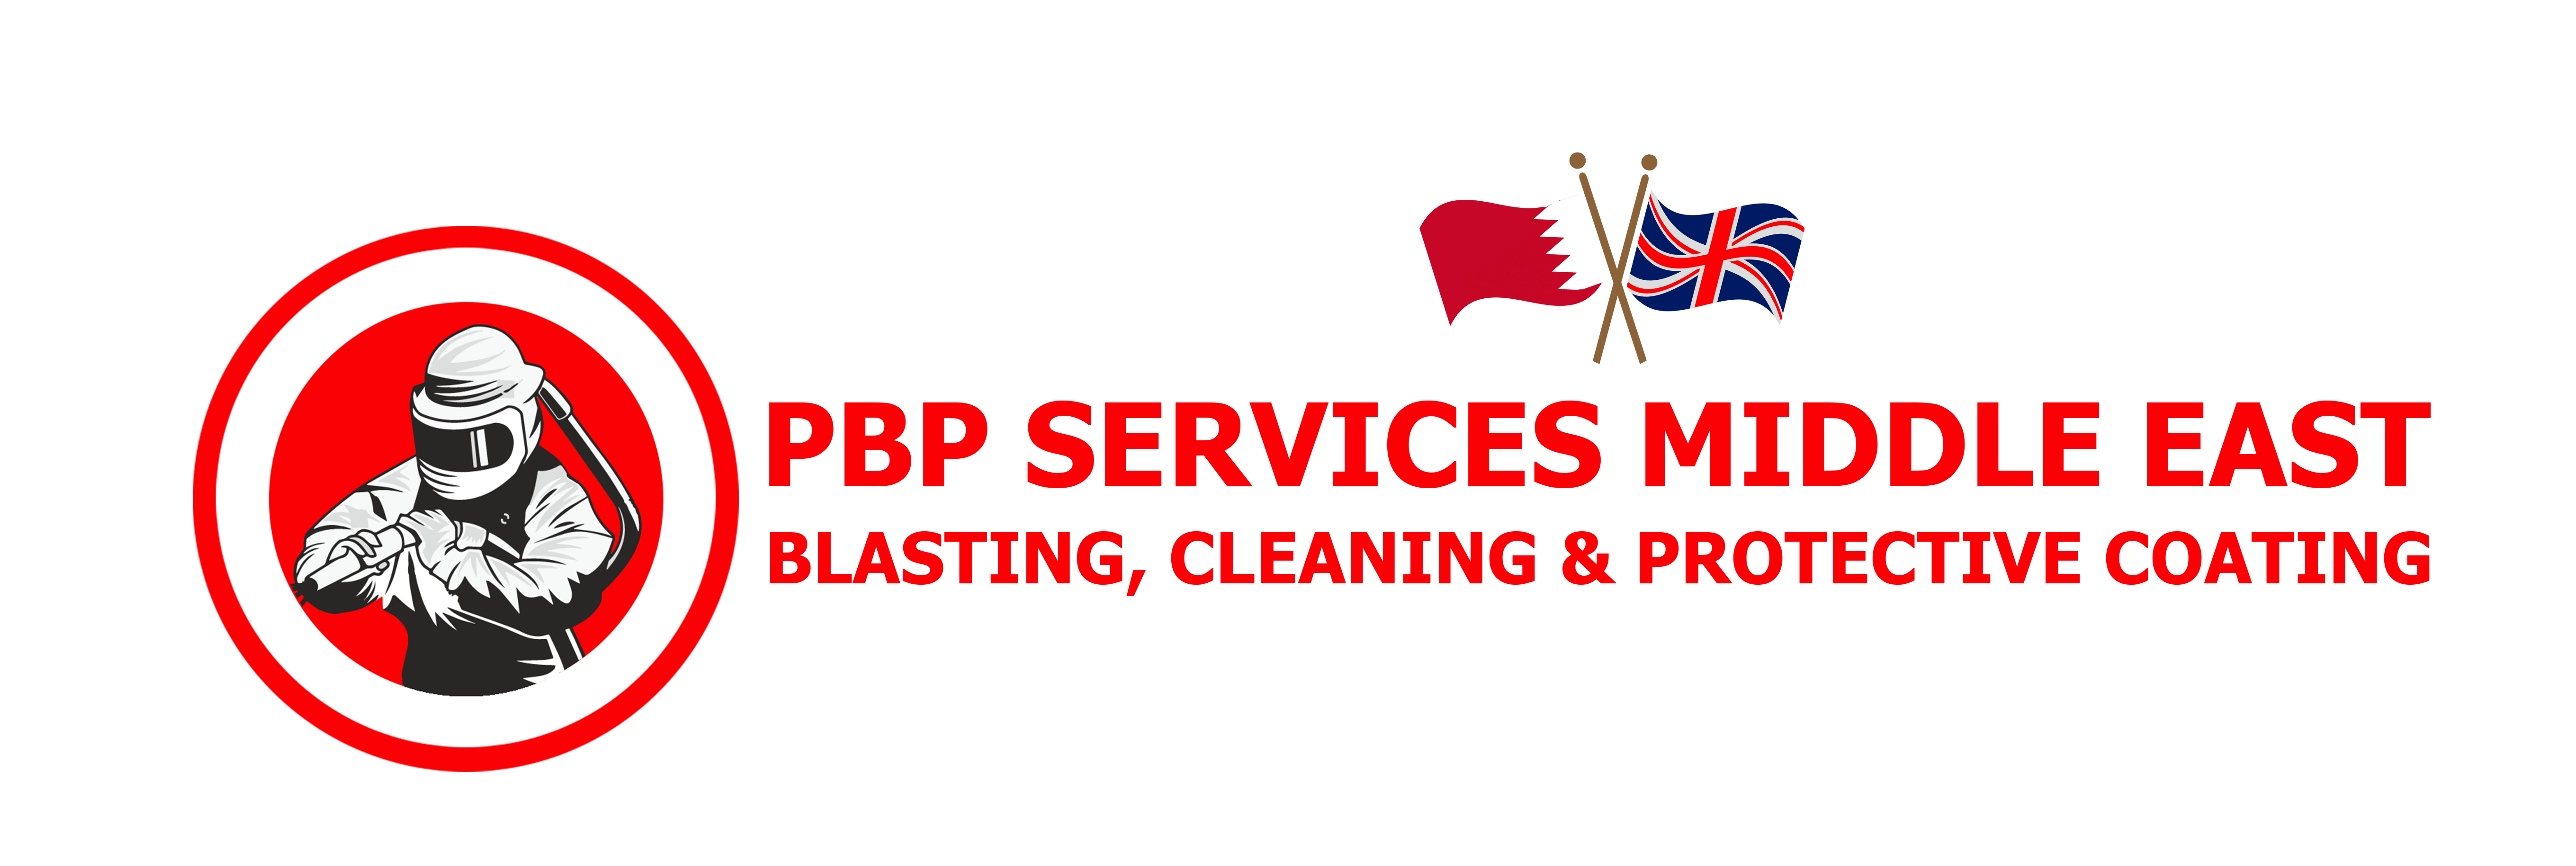 PBP Services Middle East